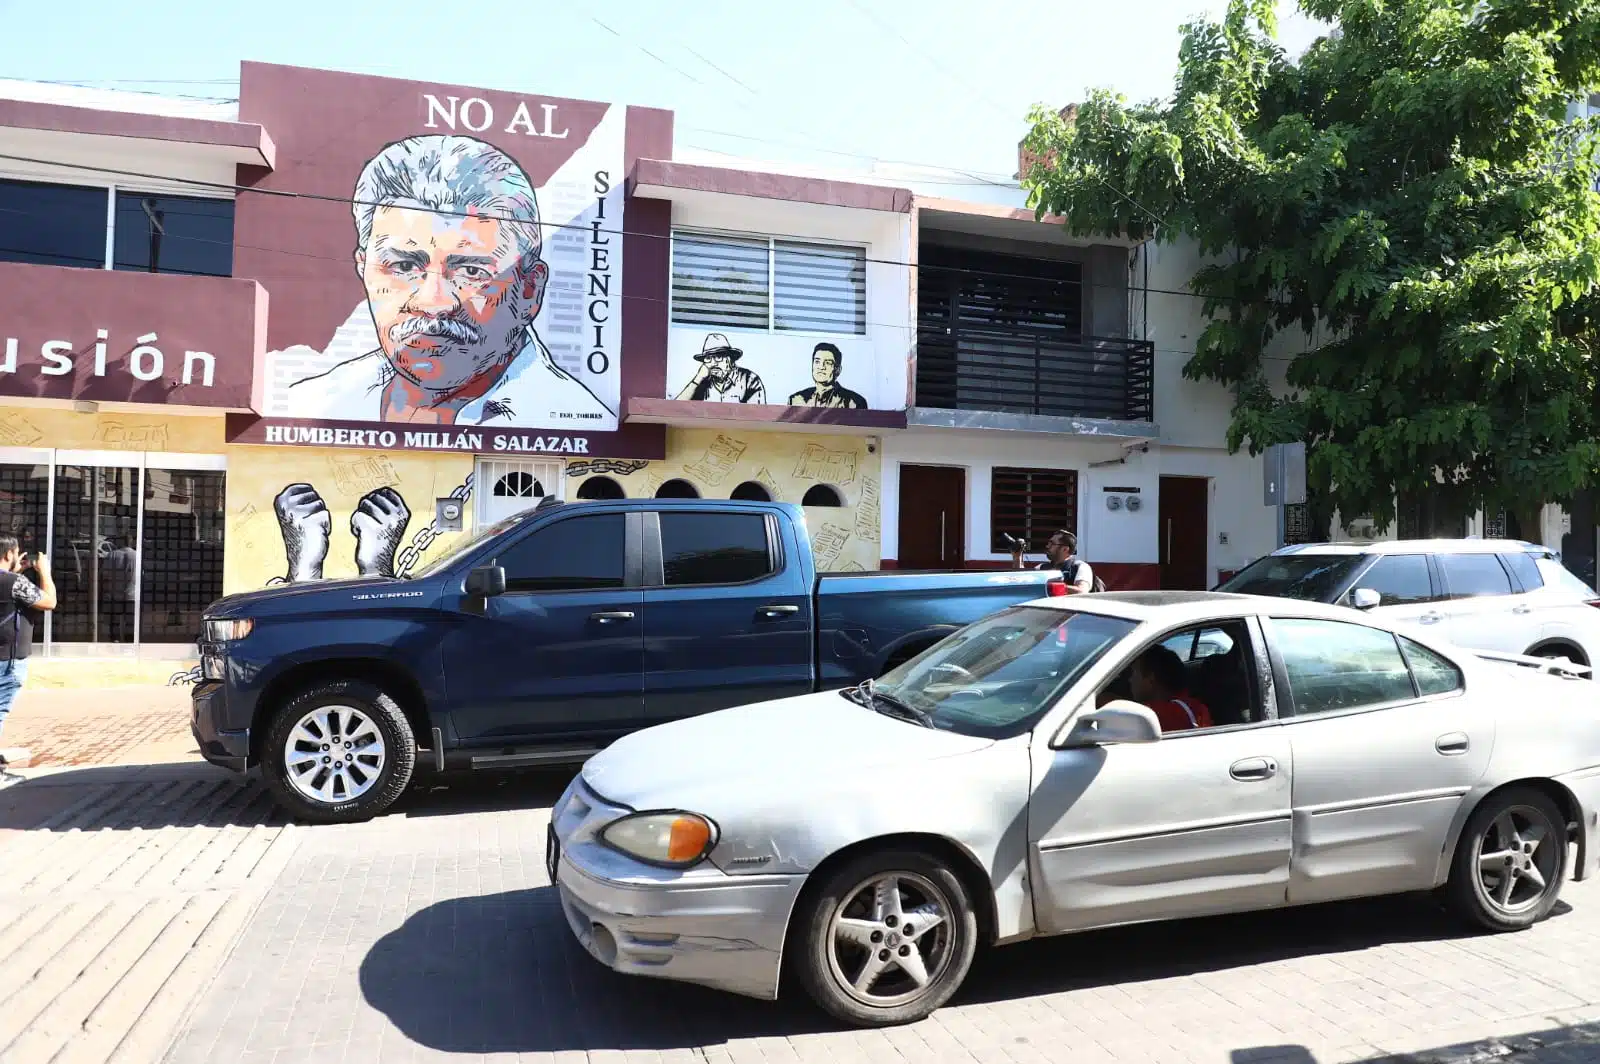 Mural con la imagen de Humberto Millán Salazar y carros pasando por el lugar